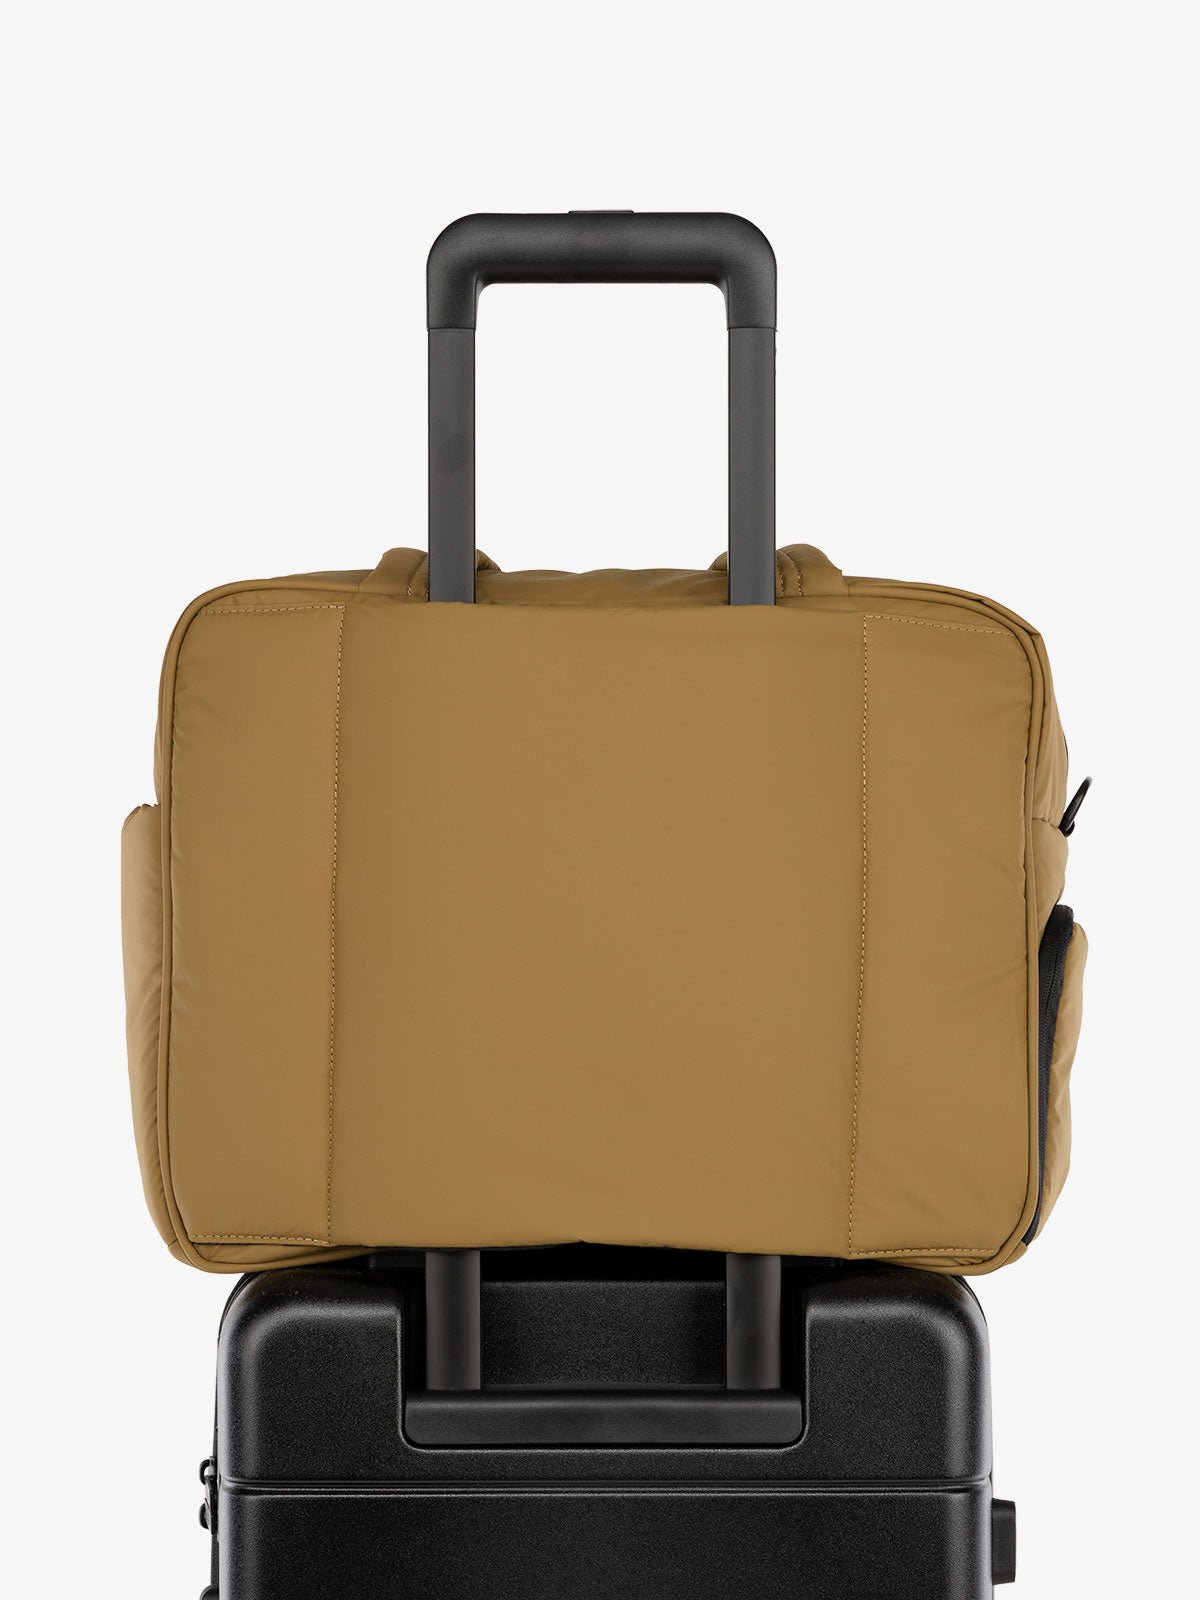 CALPAK Luka Weekender Duffel Bag with trolley sleeve for travel in brown